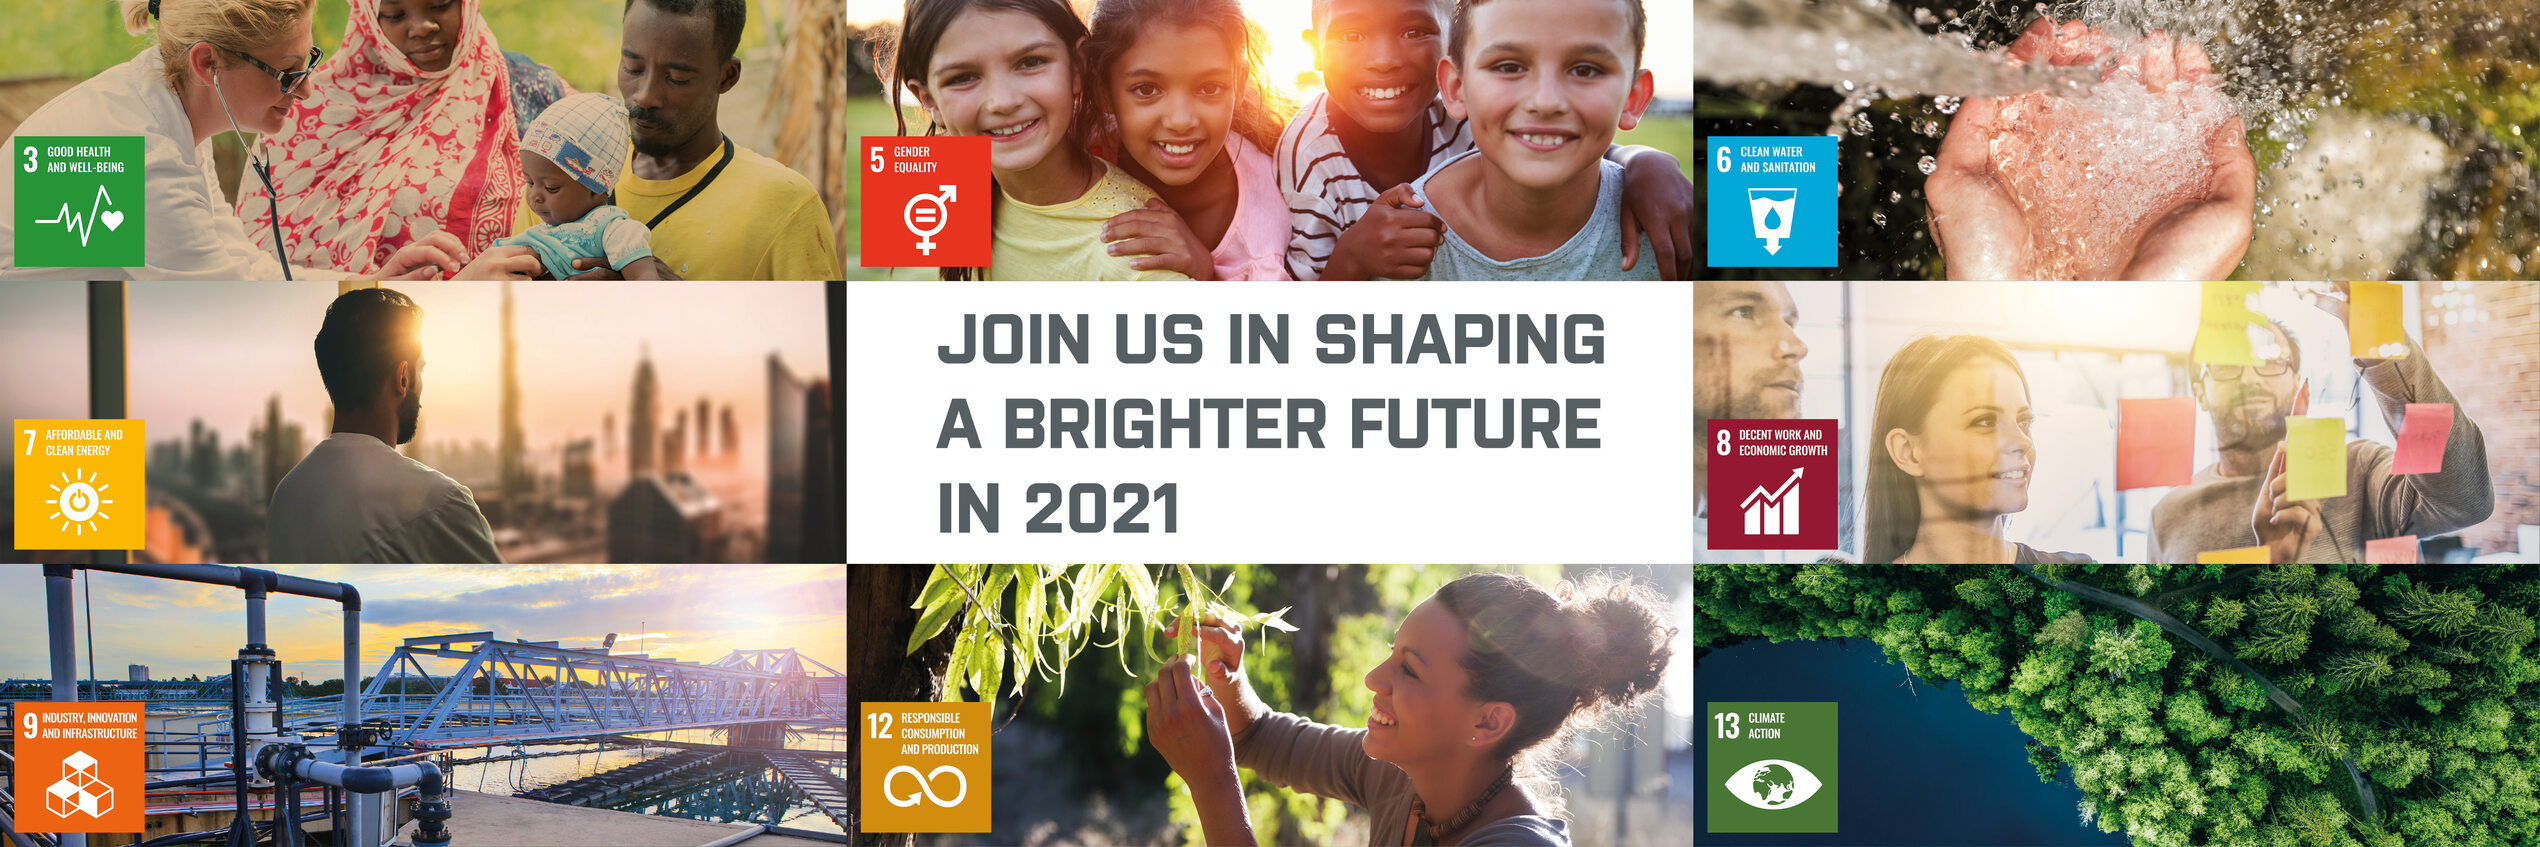 Rejoignez-nous pour façonner un avenir meilleur en 2021